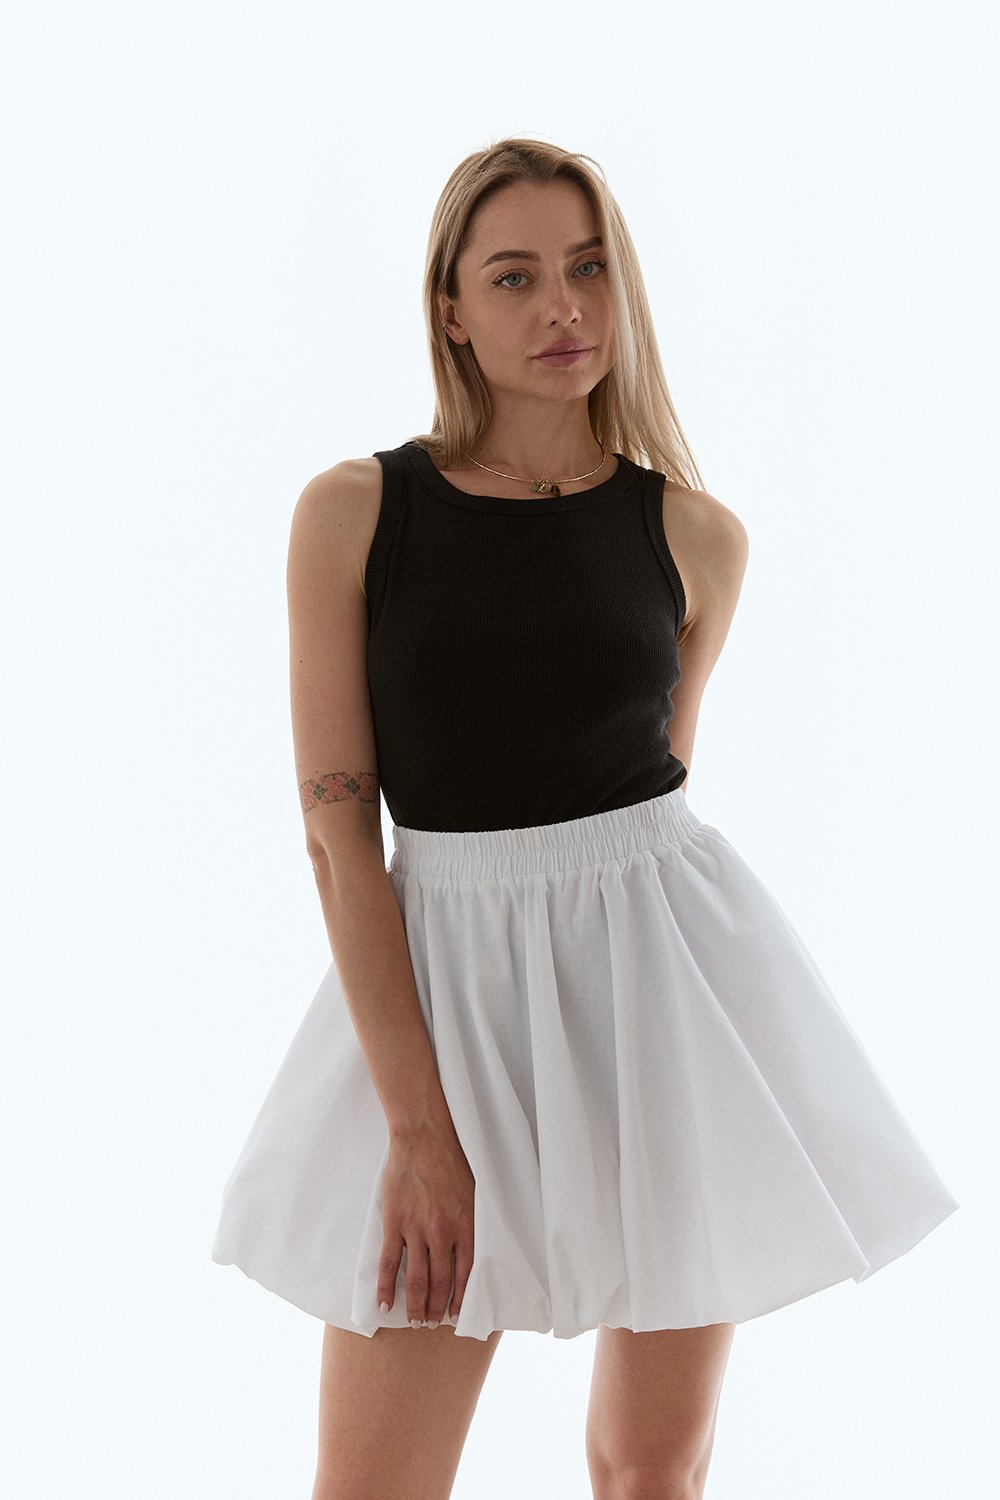 White cotton mini skirt